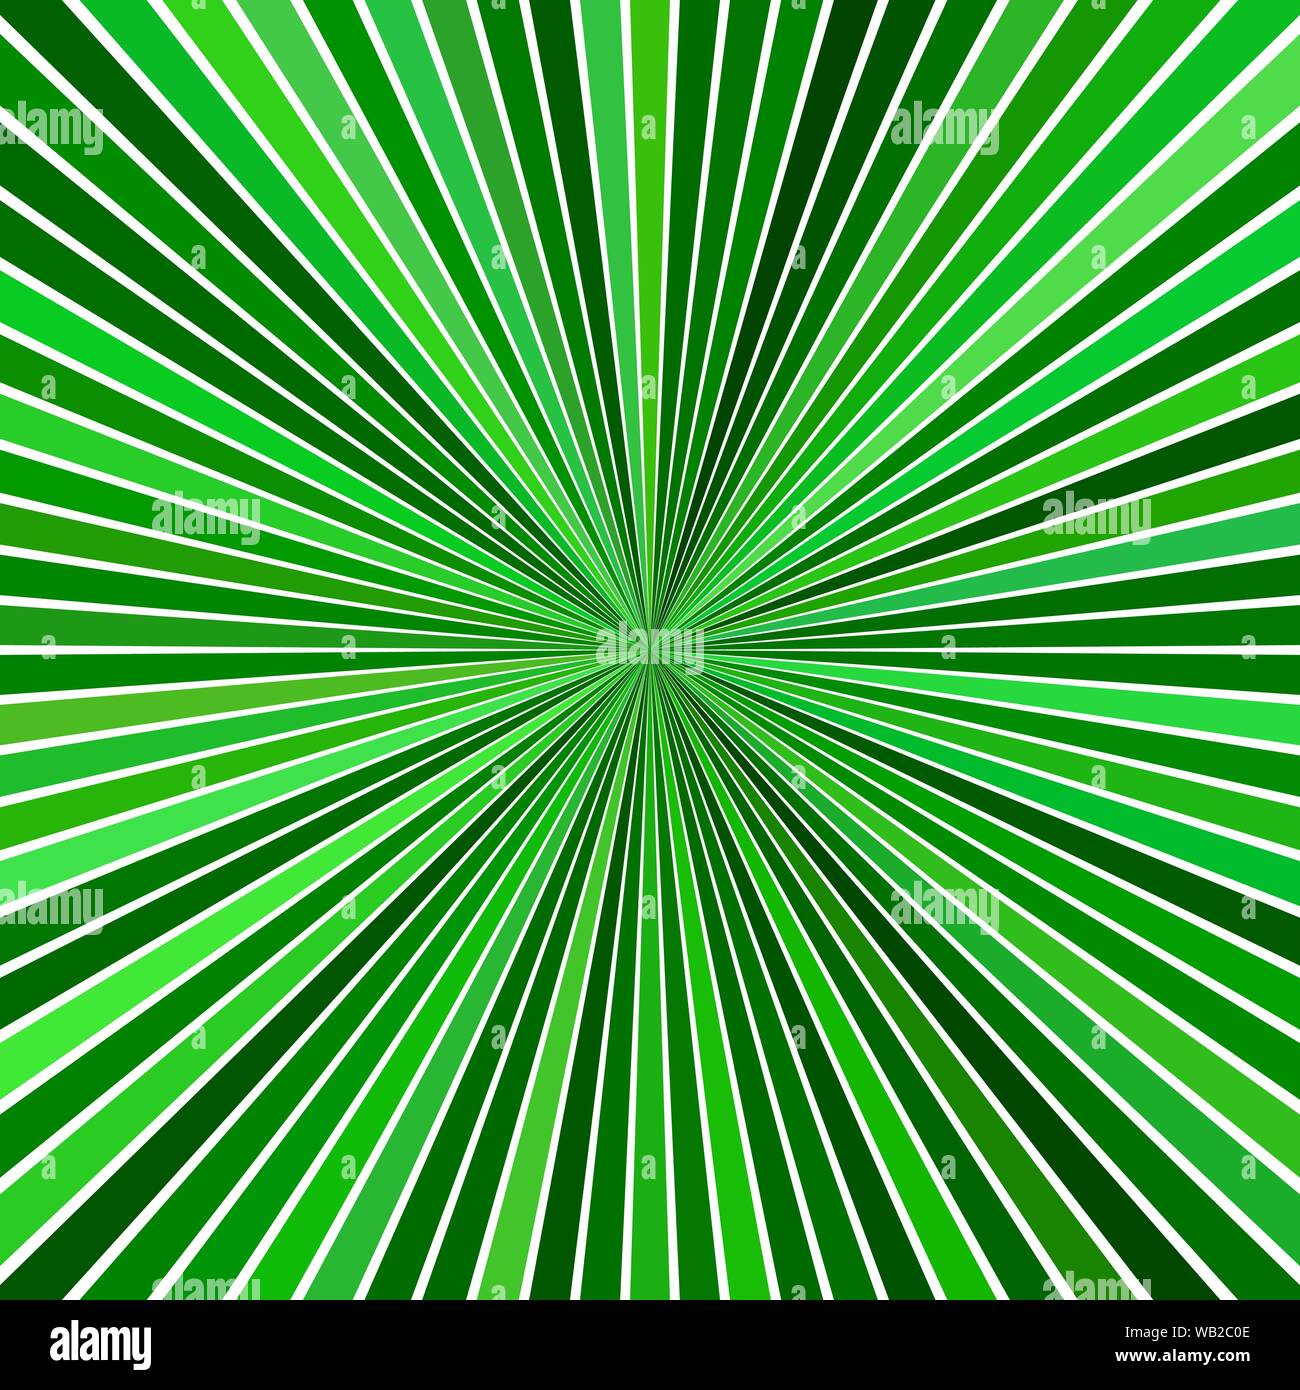 Grüne psychedelischen geometrcial Speed Concept Hintergrund - Vektor starburst Design Stock Vektor